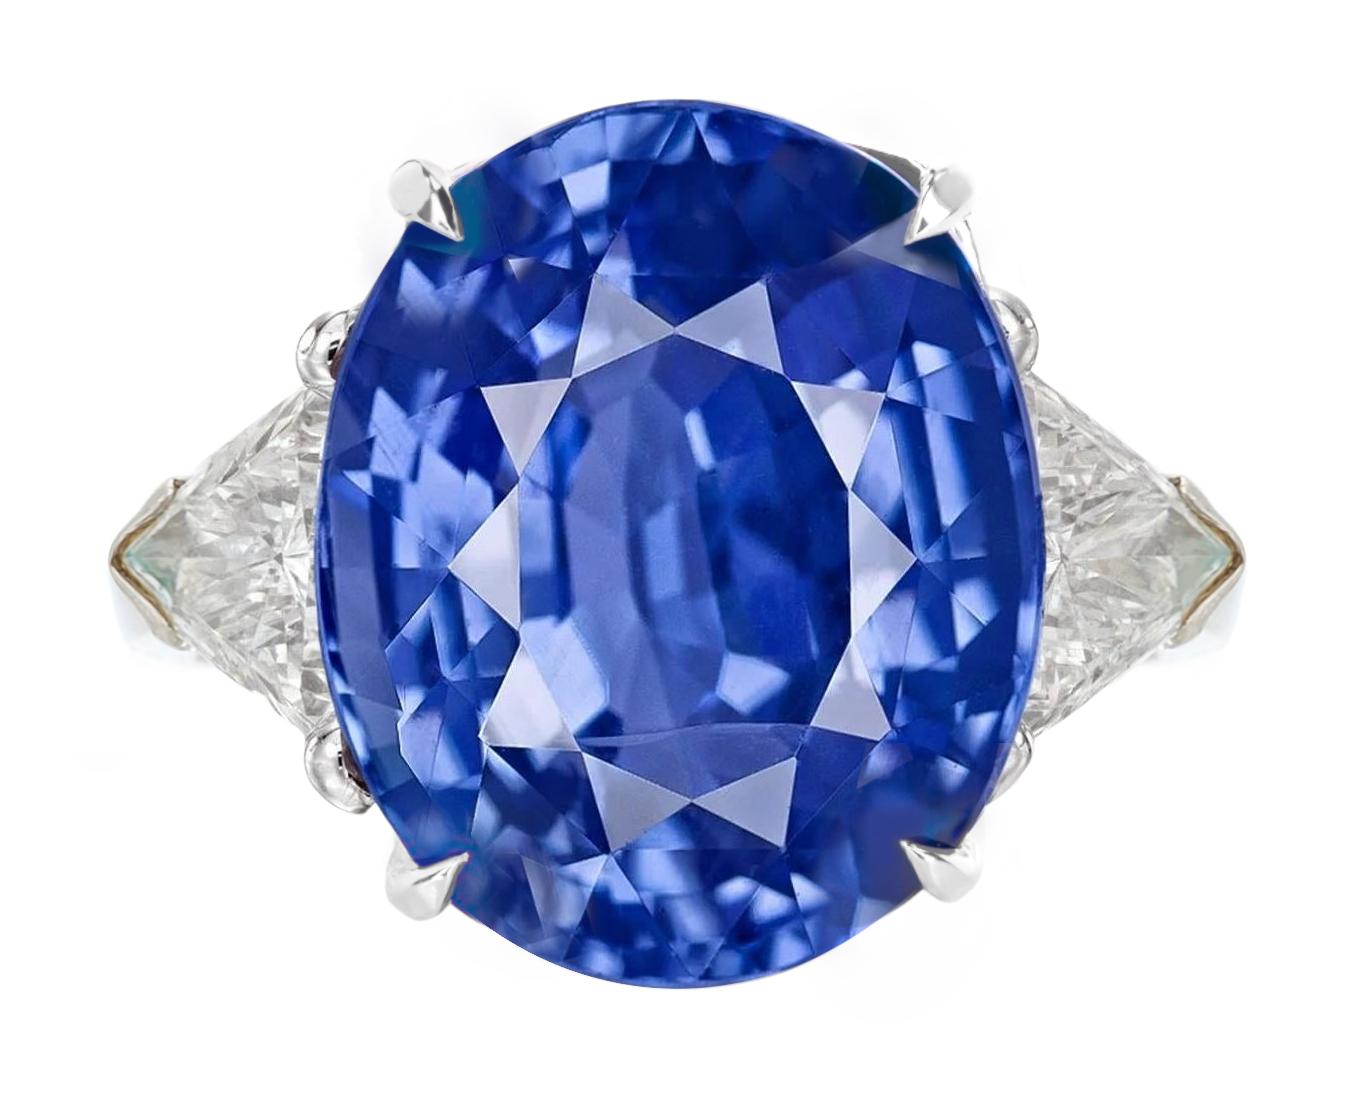 9 carat blue sapphire price